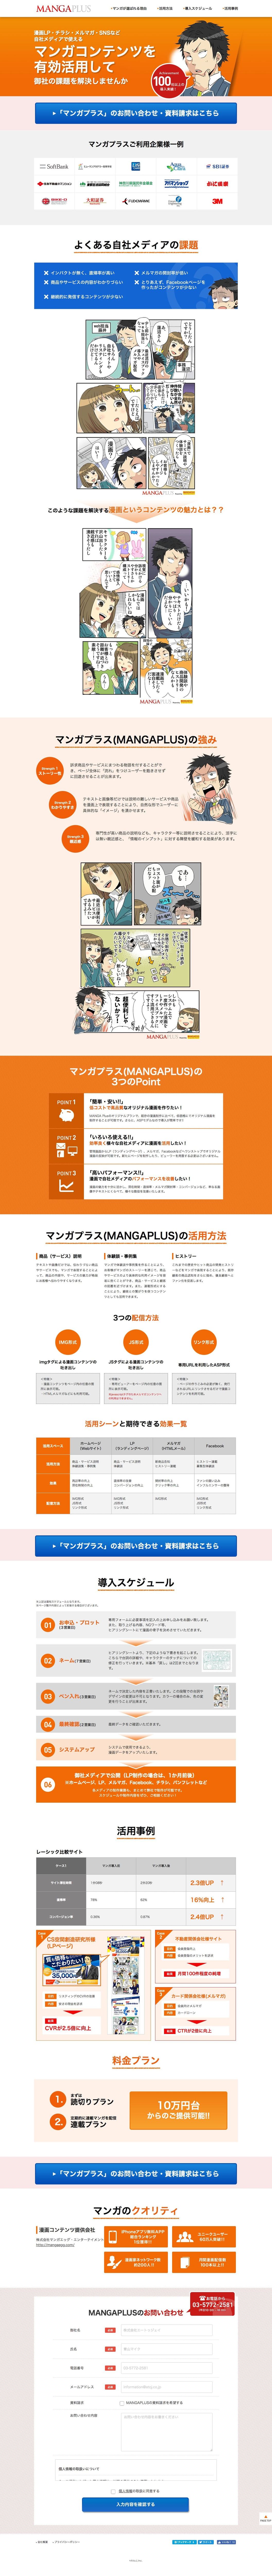 マンガプラス Mangaplus サイトのランディングページデザイン Lp参考事例 Lp幹事